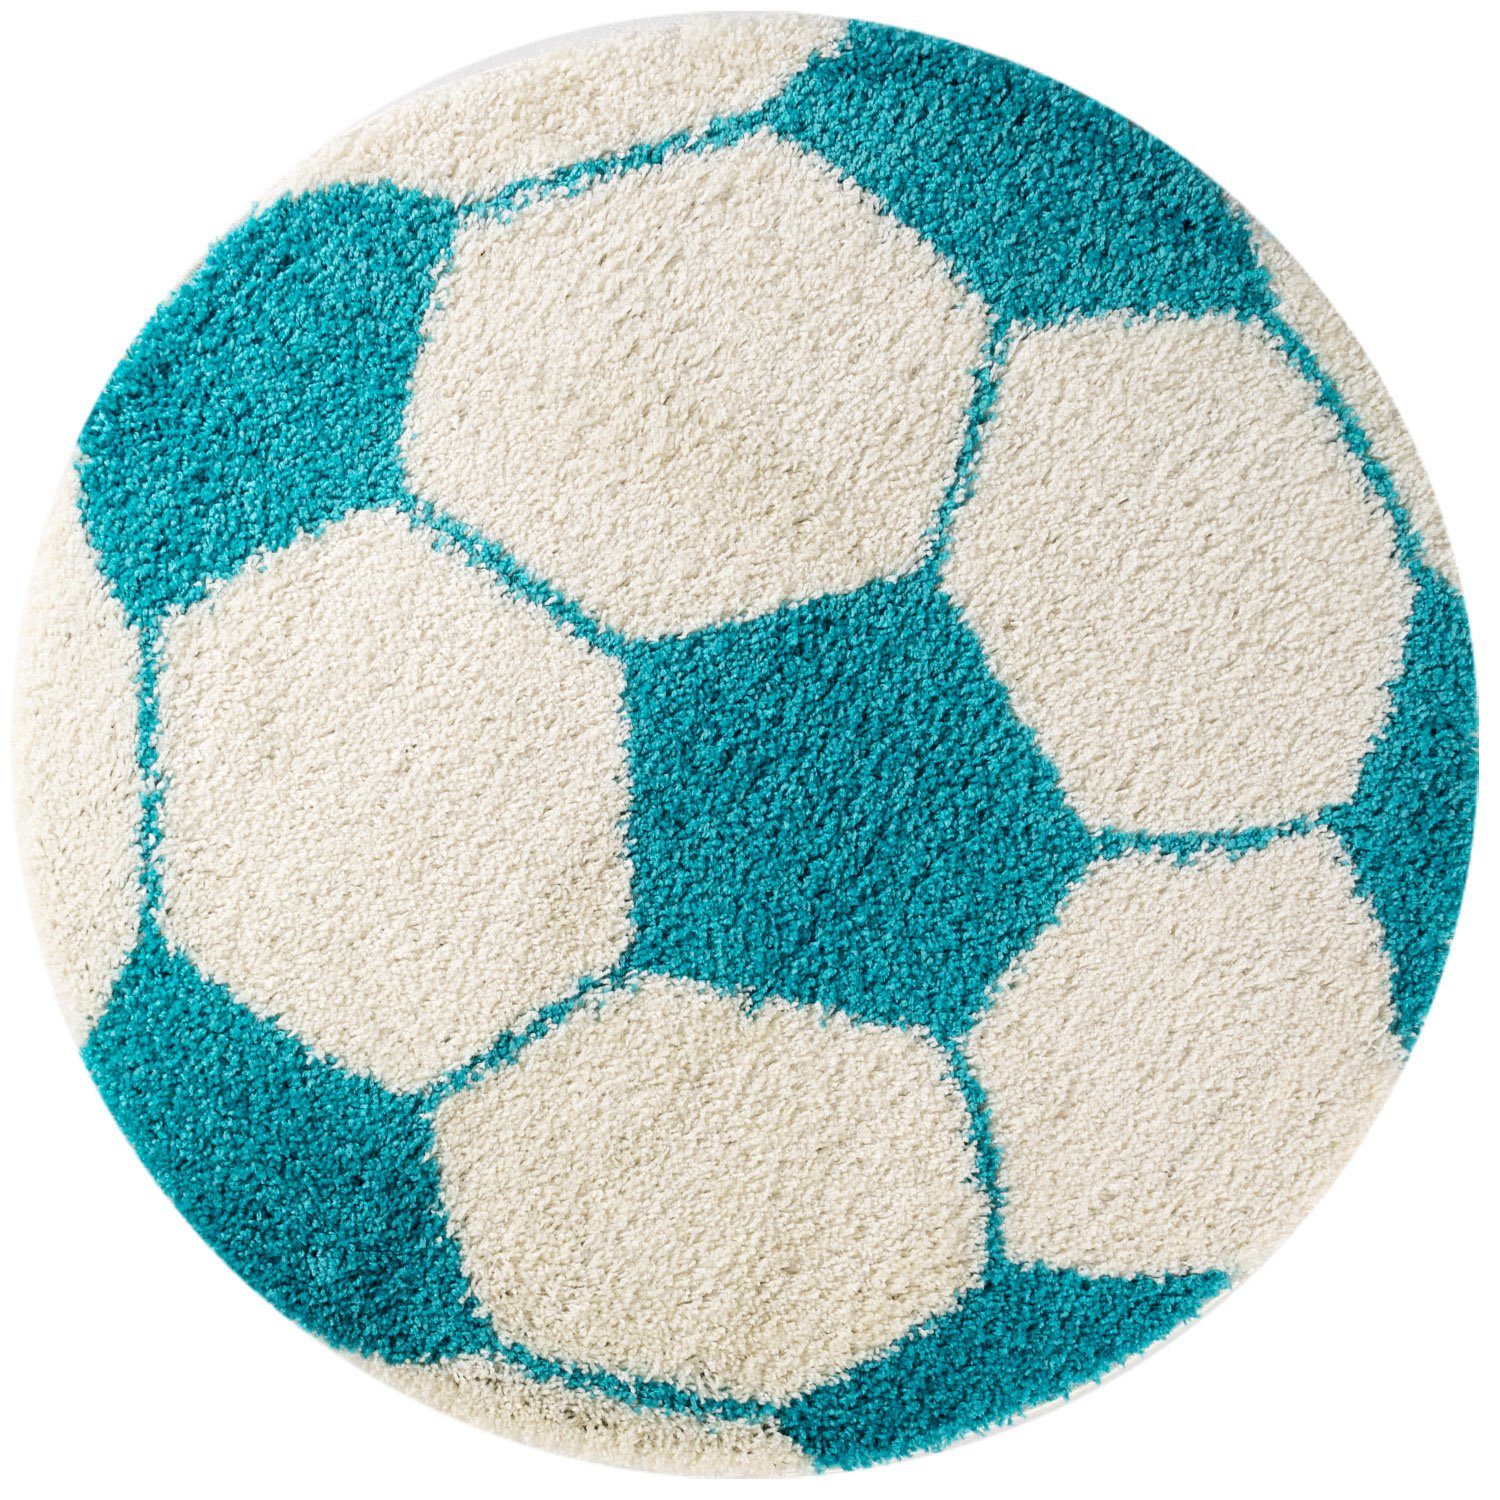 Kinderteppich Fußball-Design, Carpetsale24, Rund, versch.farben Kinderzimmer Teppich mm, Türkis Fußball-Form Kinder größen 30 Höhe: und